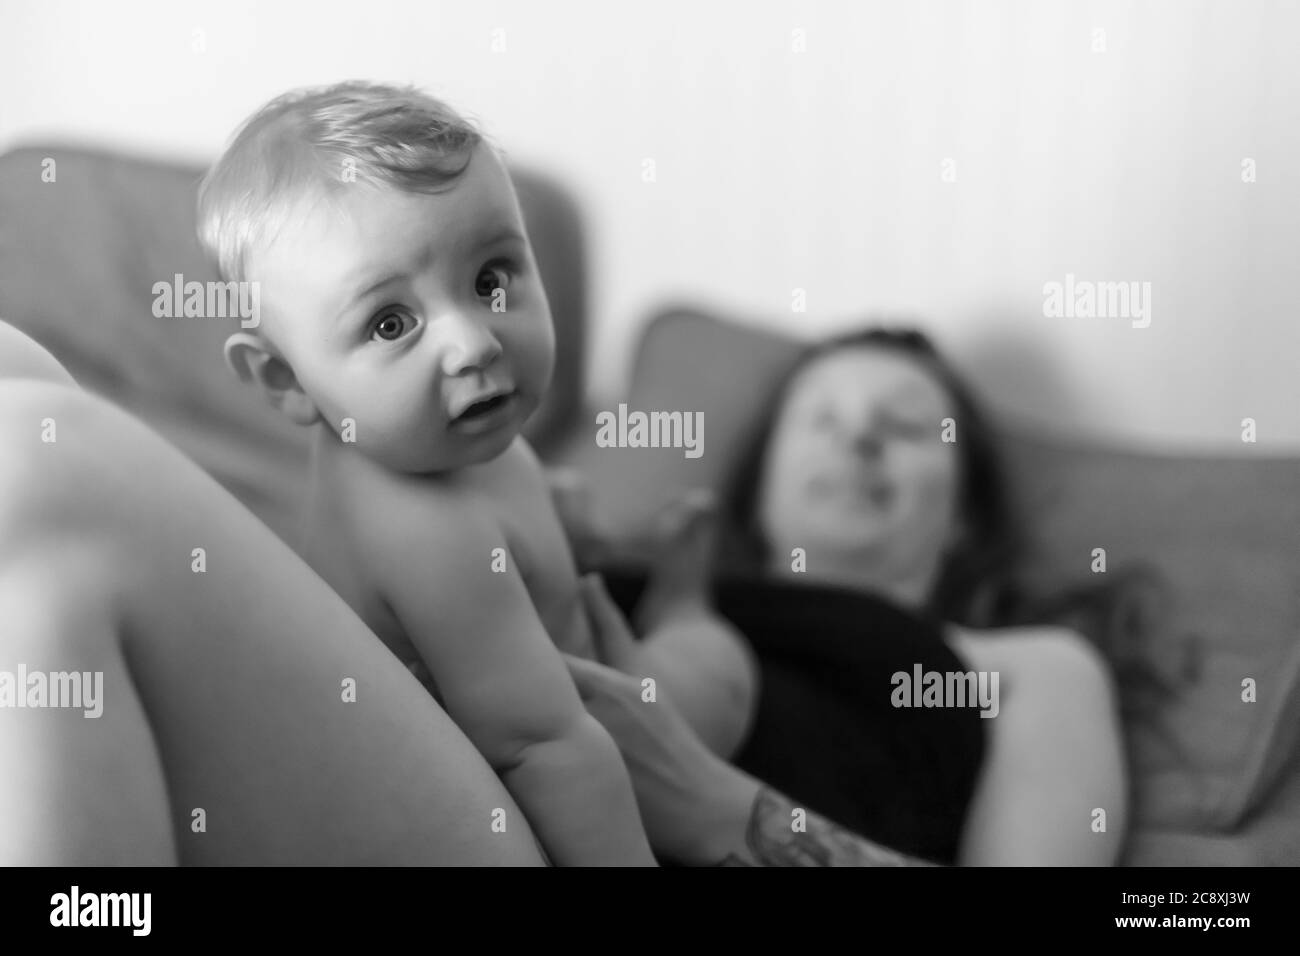 Madre e figlio del bambino intimità gioiosa. Bambino seduto sul ventre della madre e guardando la macchina fotografica con un'espressione divertente. Ritratto in bianco e nero. Foto Stock